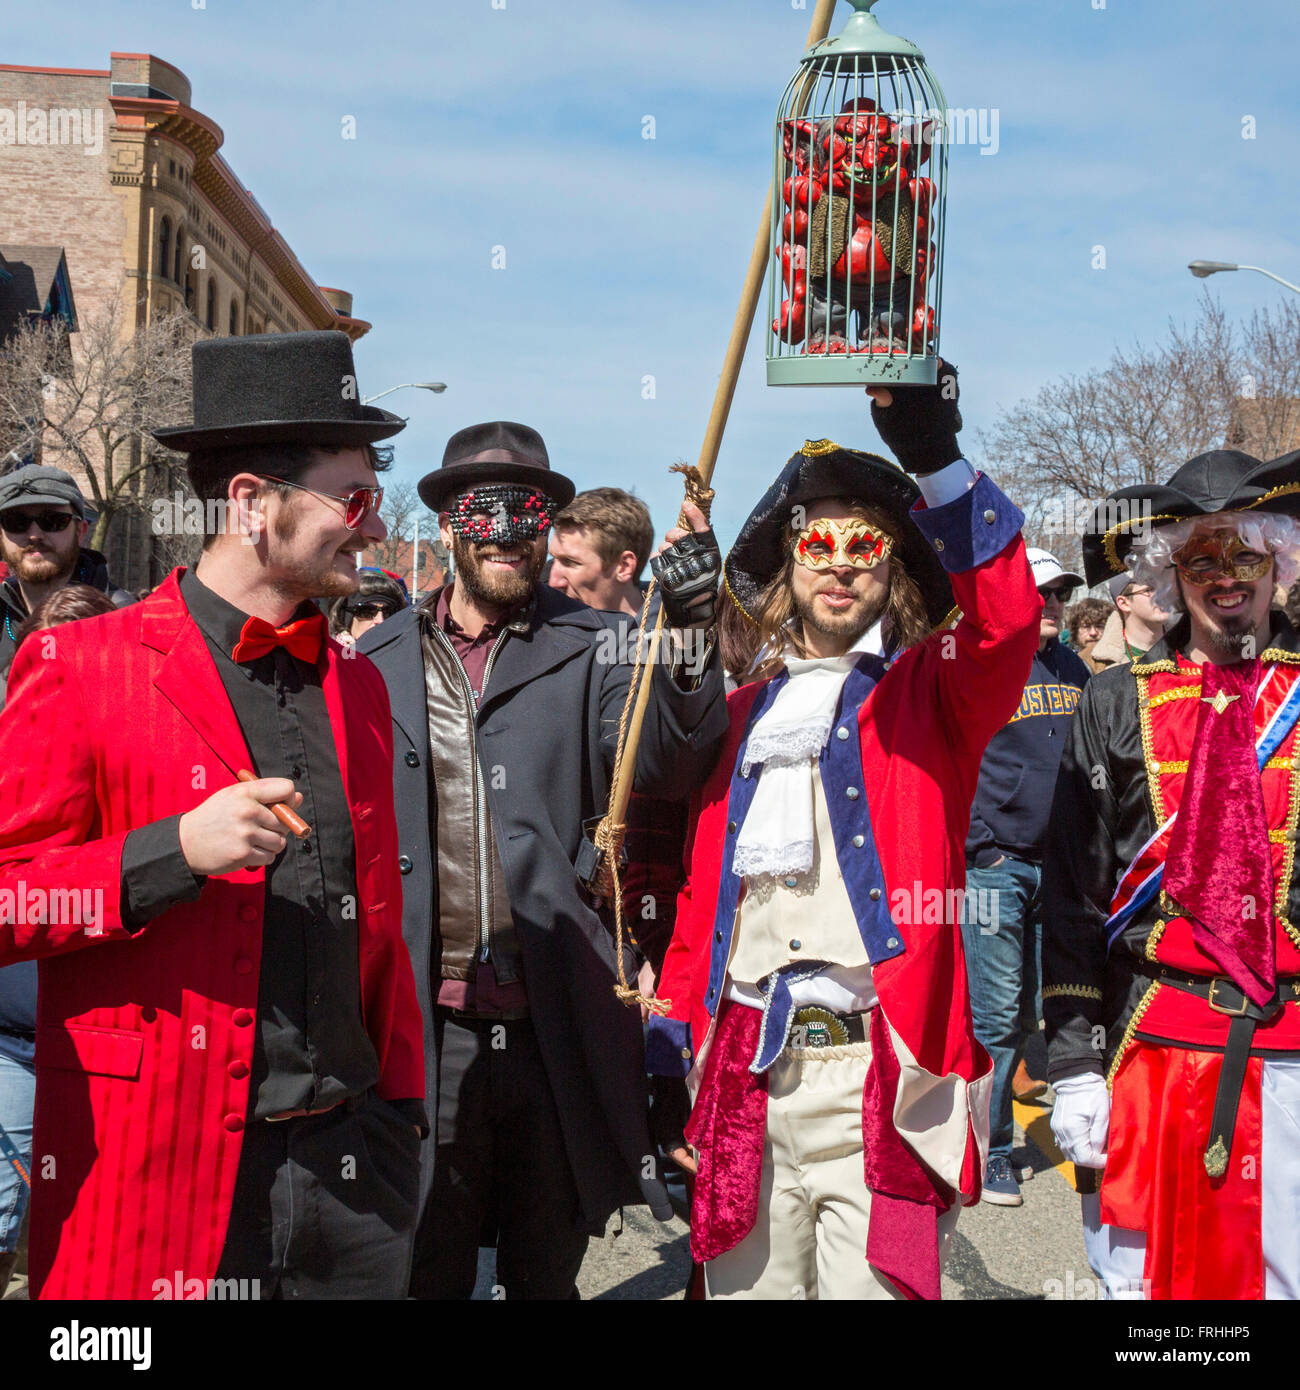 Detroit, Michigan - La Marche du Nain rouge célèbre la venue du printemps et bannit l'Nain rouge (Red Dwarf) de Detroit Banque D'Images